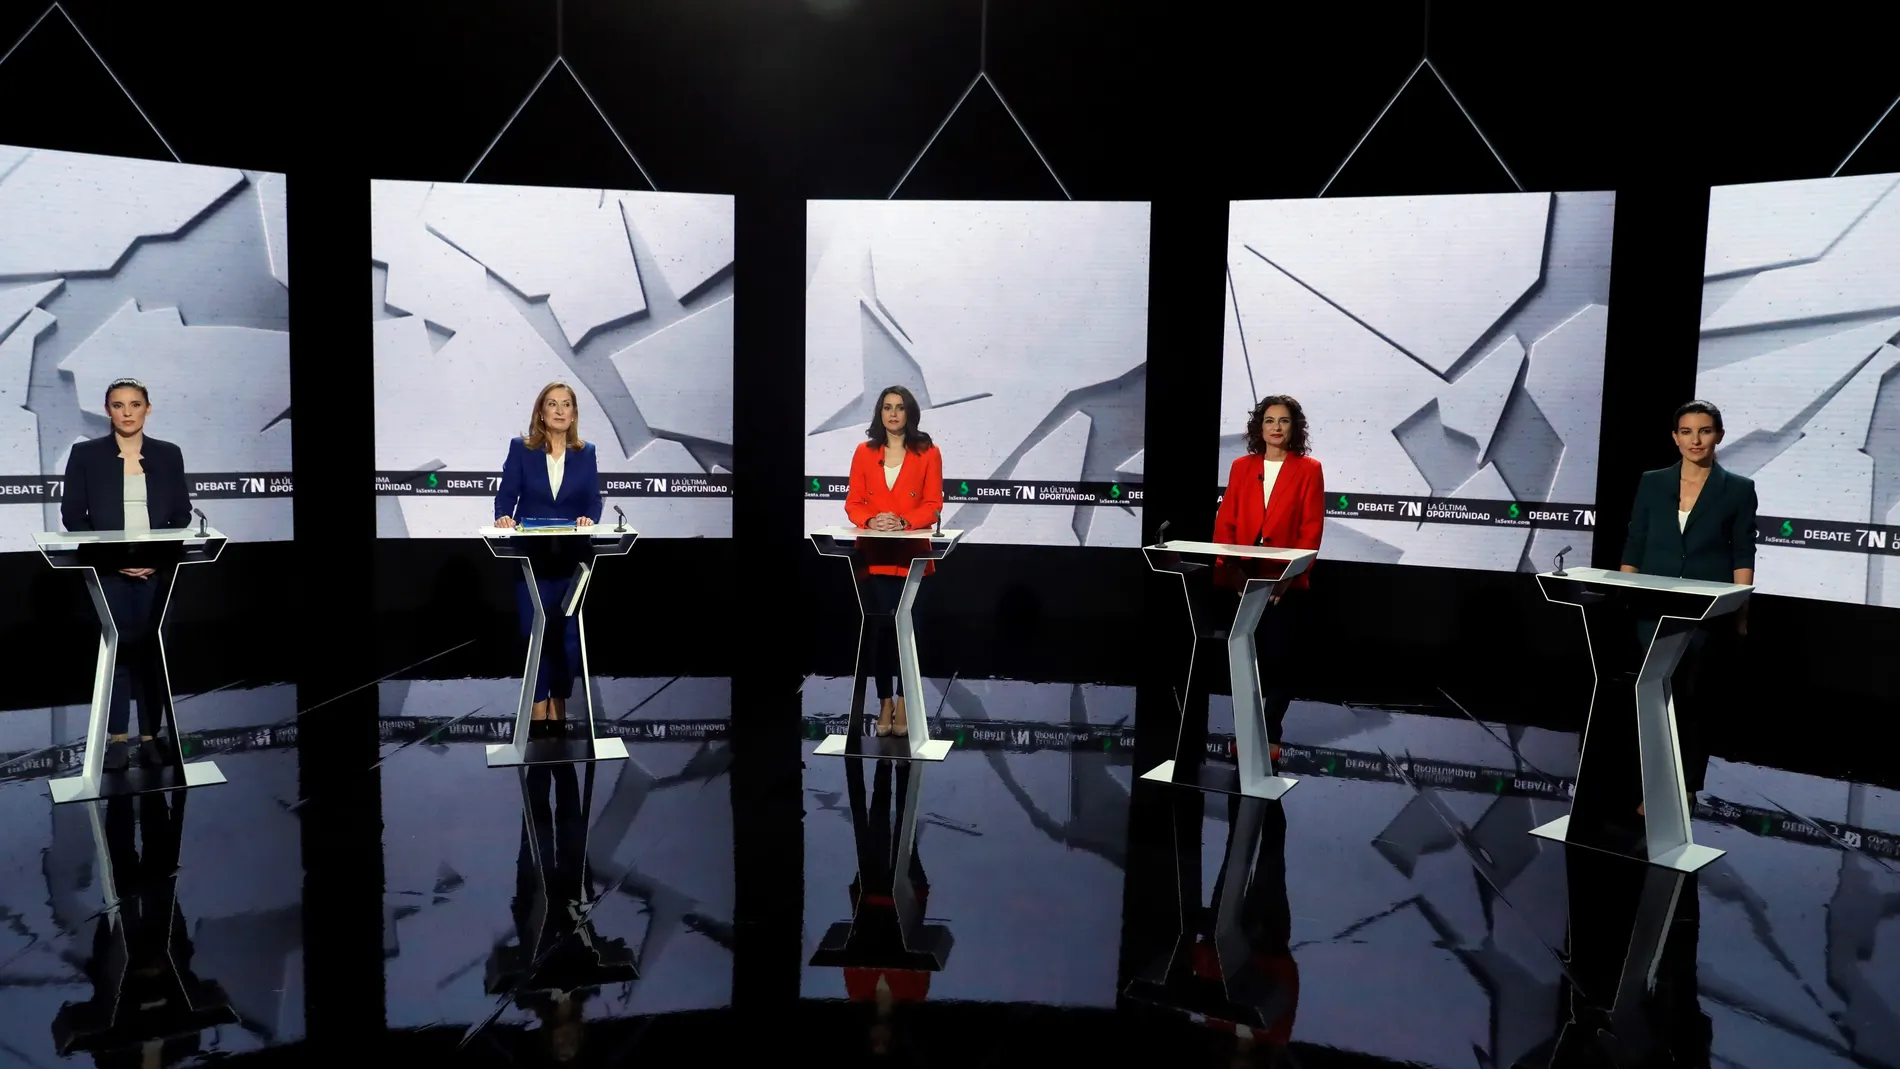 Irene Montero, Ana Pastor, Inés Arrimadas, María Jesús Montero y Rocío Monasterio en el debate del 7N